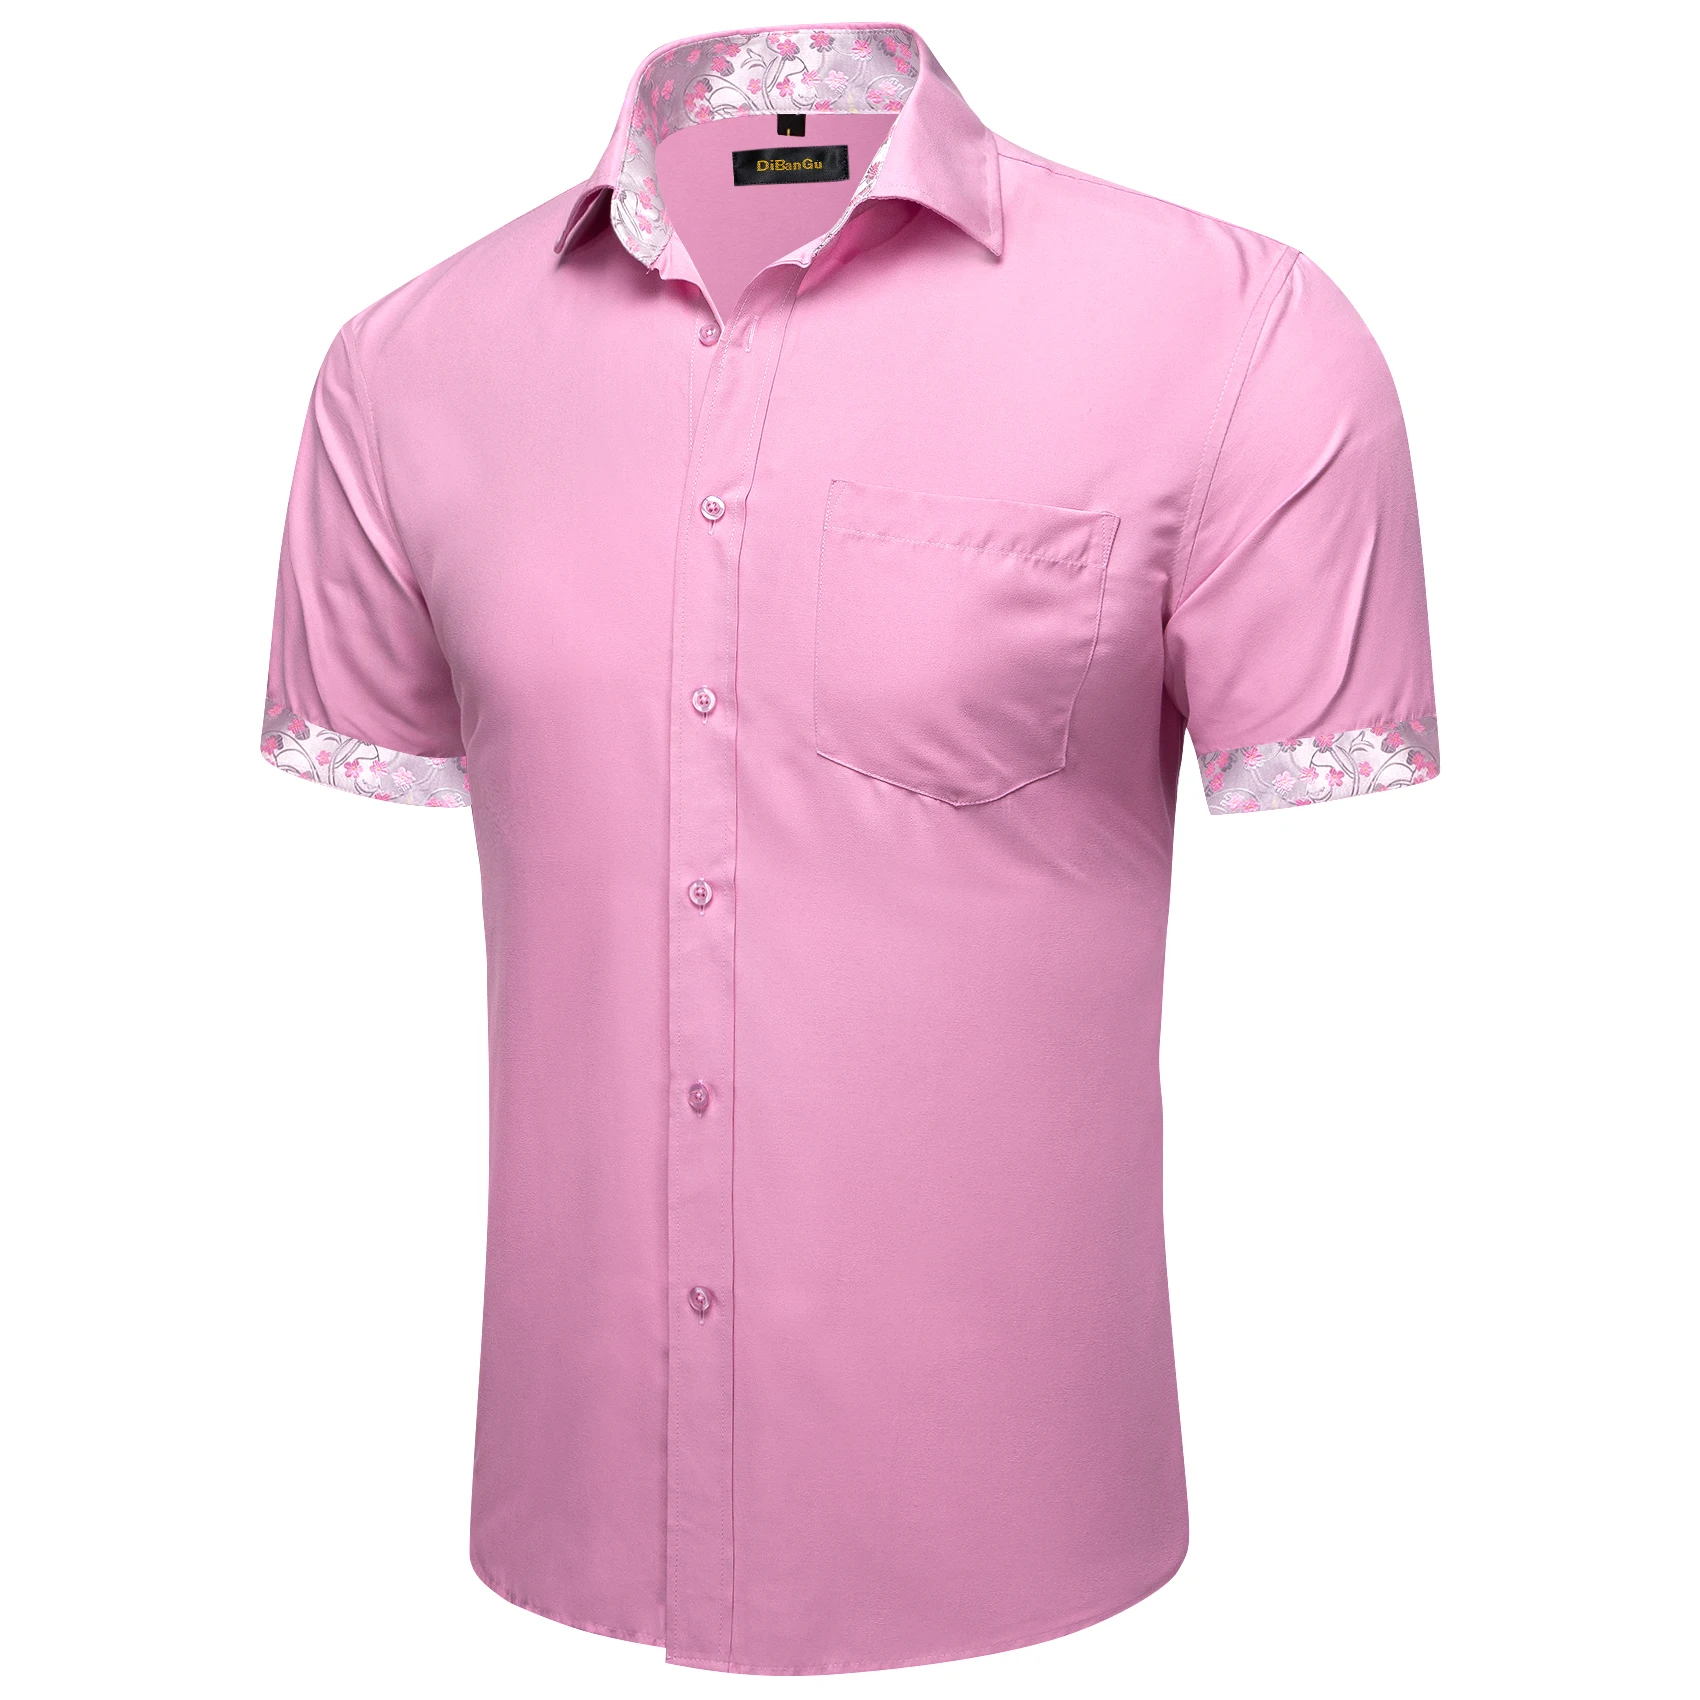 Pink Designer Shirts Men | Shirt Fashion Pink Color Men | Pink Shirt ...